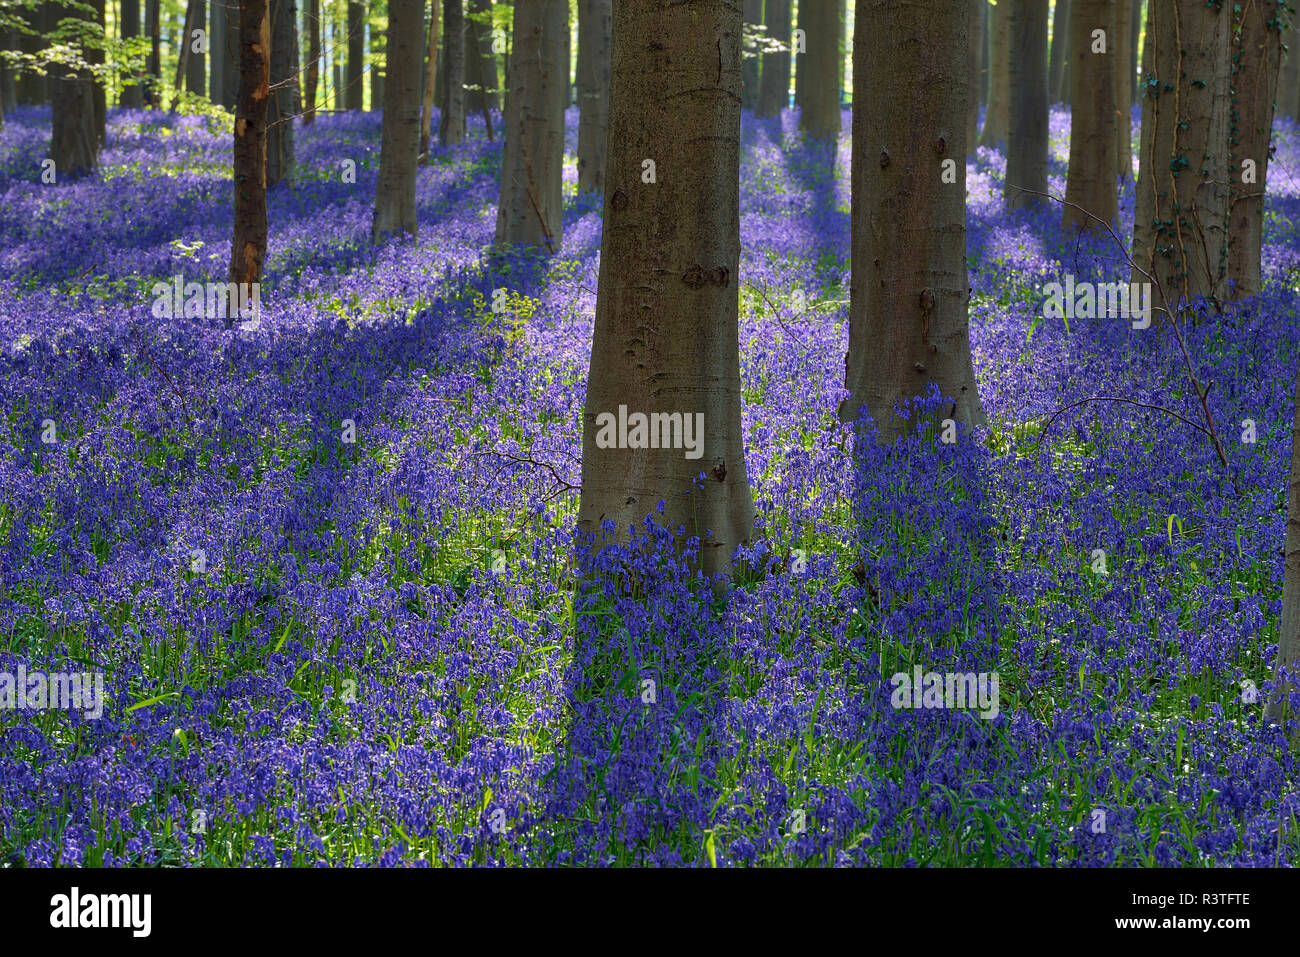 Belgio, Brabante Fiammingo, Halle, Hallerbos, Bluebell fiori, Hyacinthoides non scripta, foresta di faggio in primavera Foto Stock